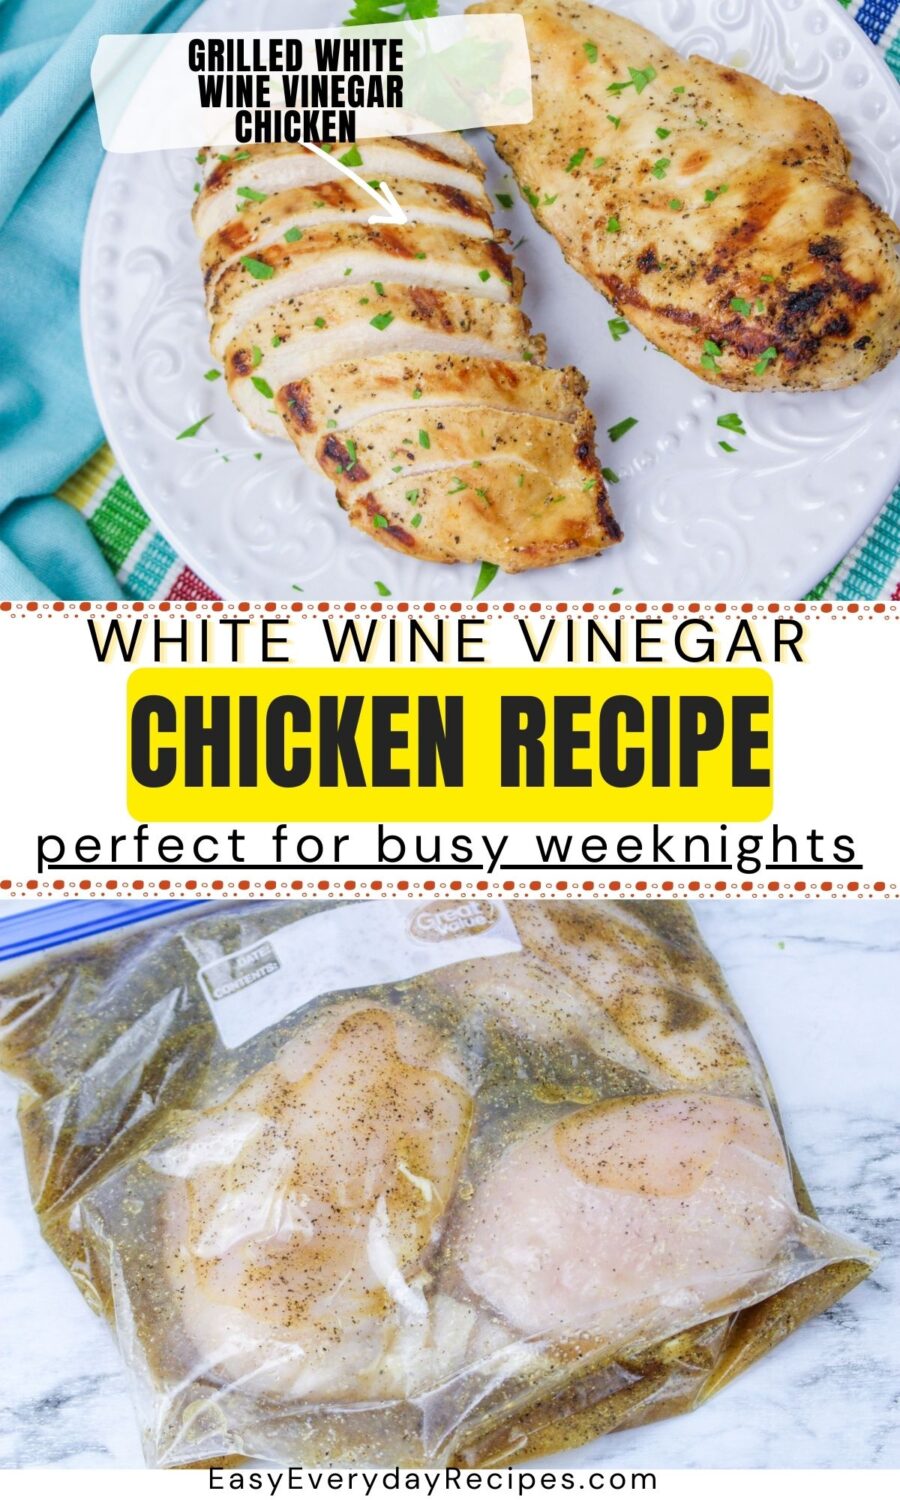 White wine vinegar chicken recipe.